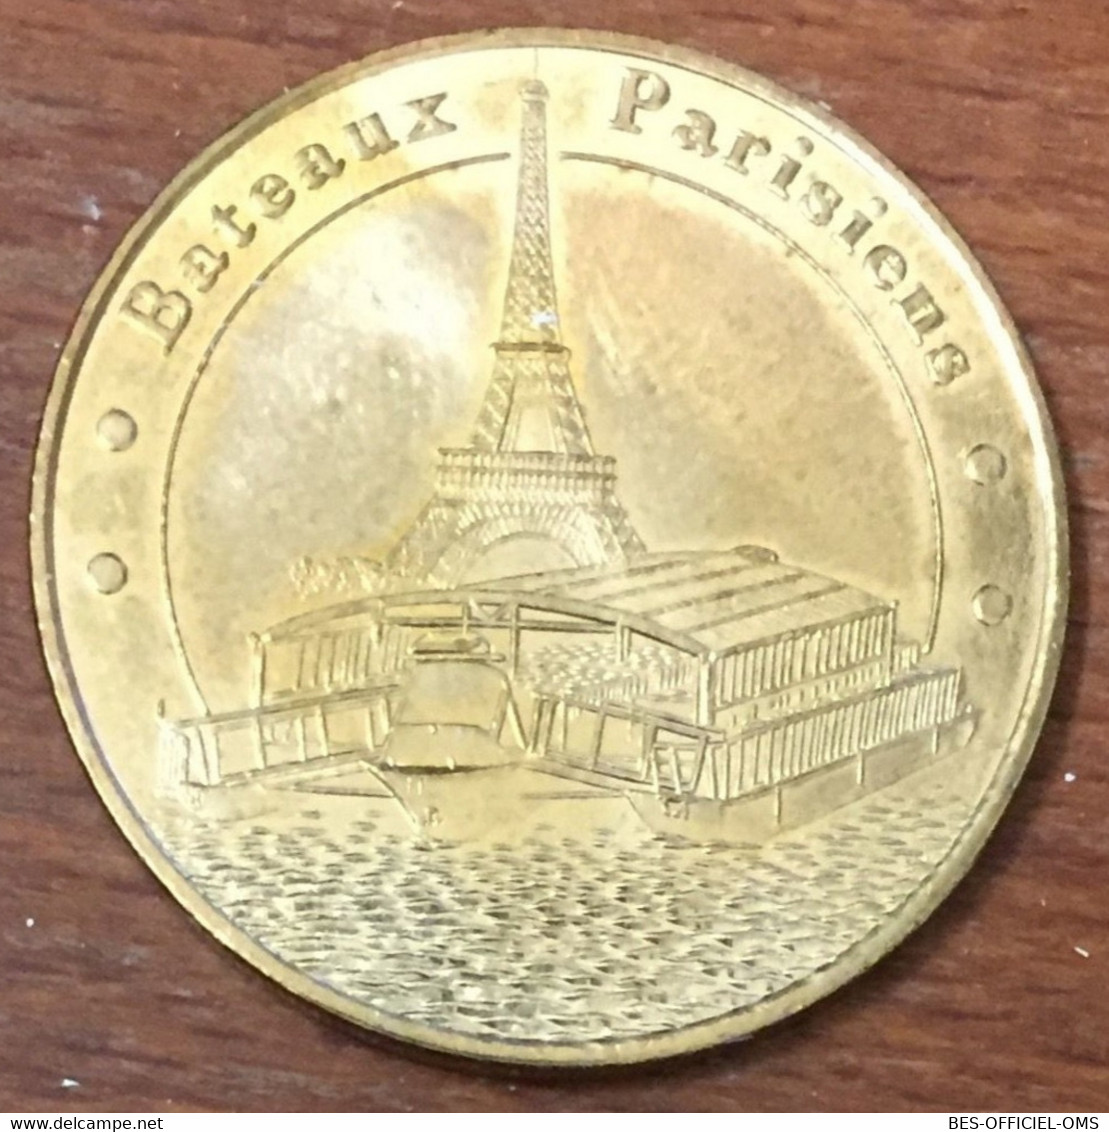 75007 PARIS BATEAUX PARISIENS MDP 2007 MEDAILLE SOUVENIR MONNAIE DE PARIS JETON TOURISTIQUE MEDALS COINS TOKENS - 2007